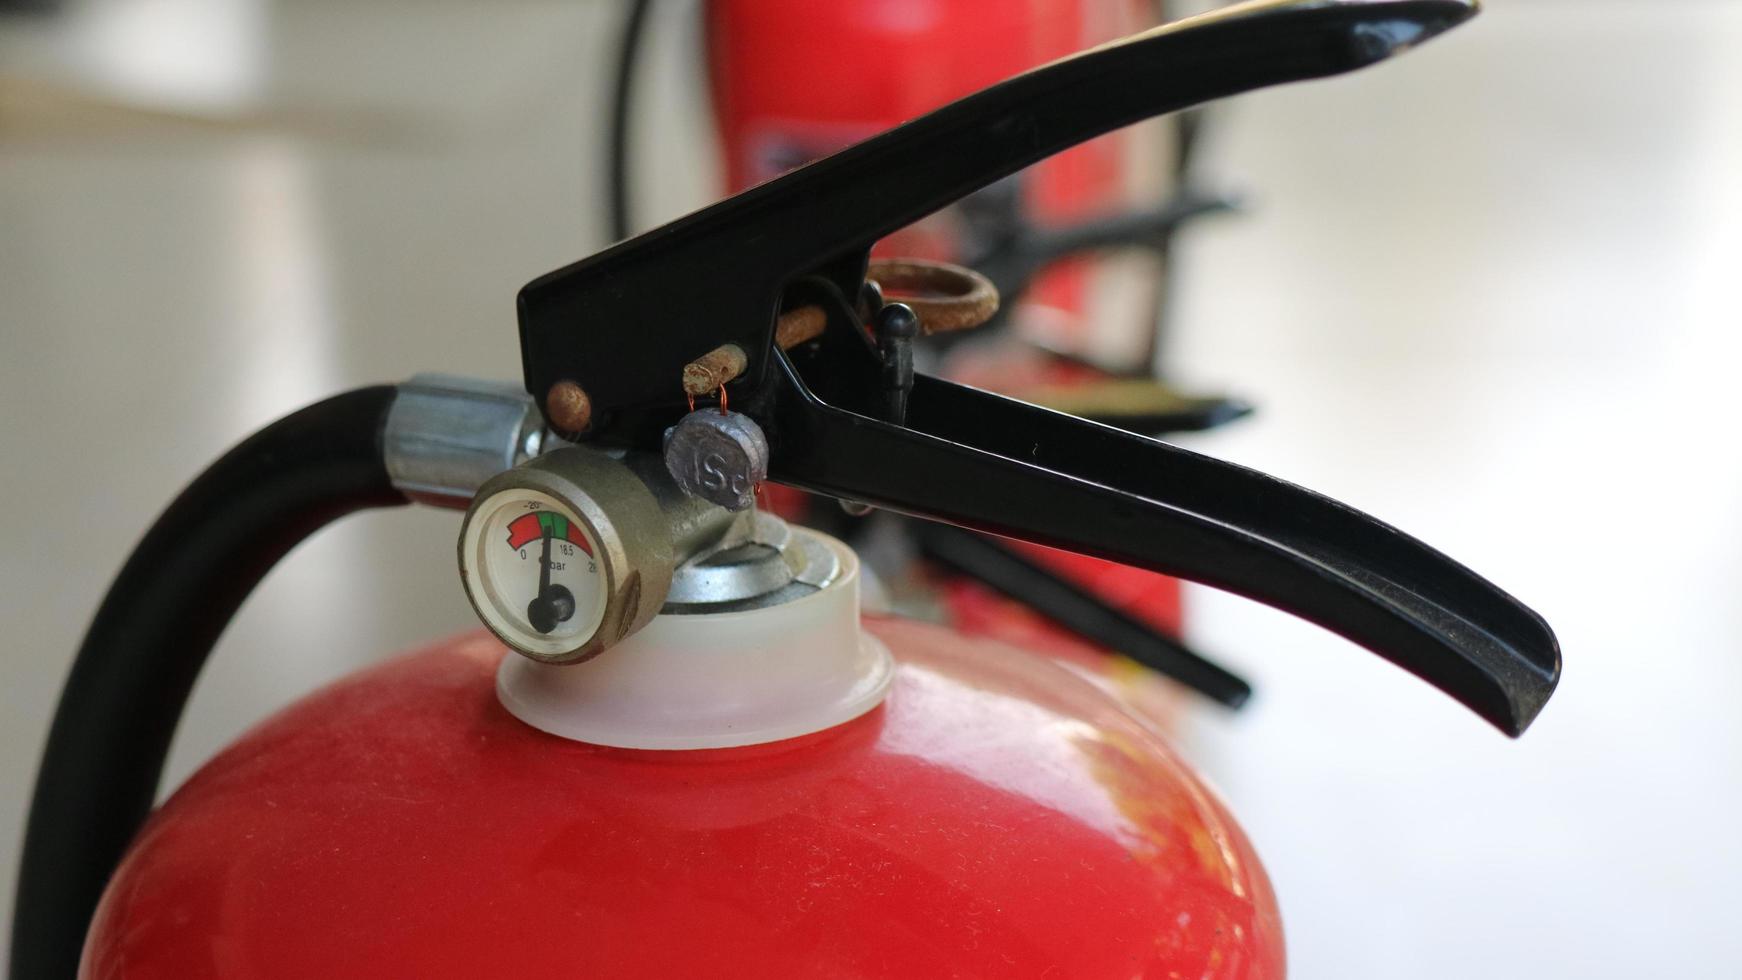 extincteurs disponibles en cas d'incendie, photo